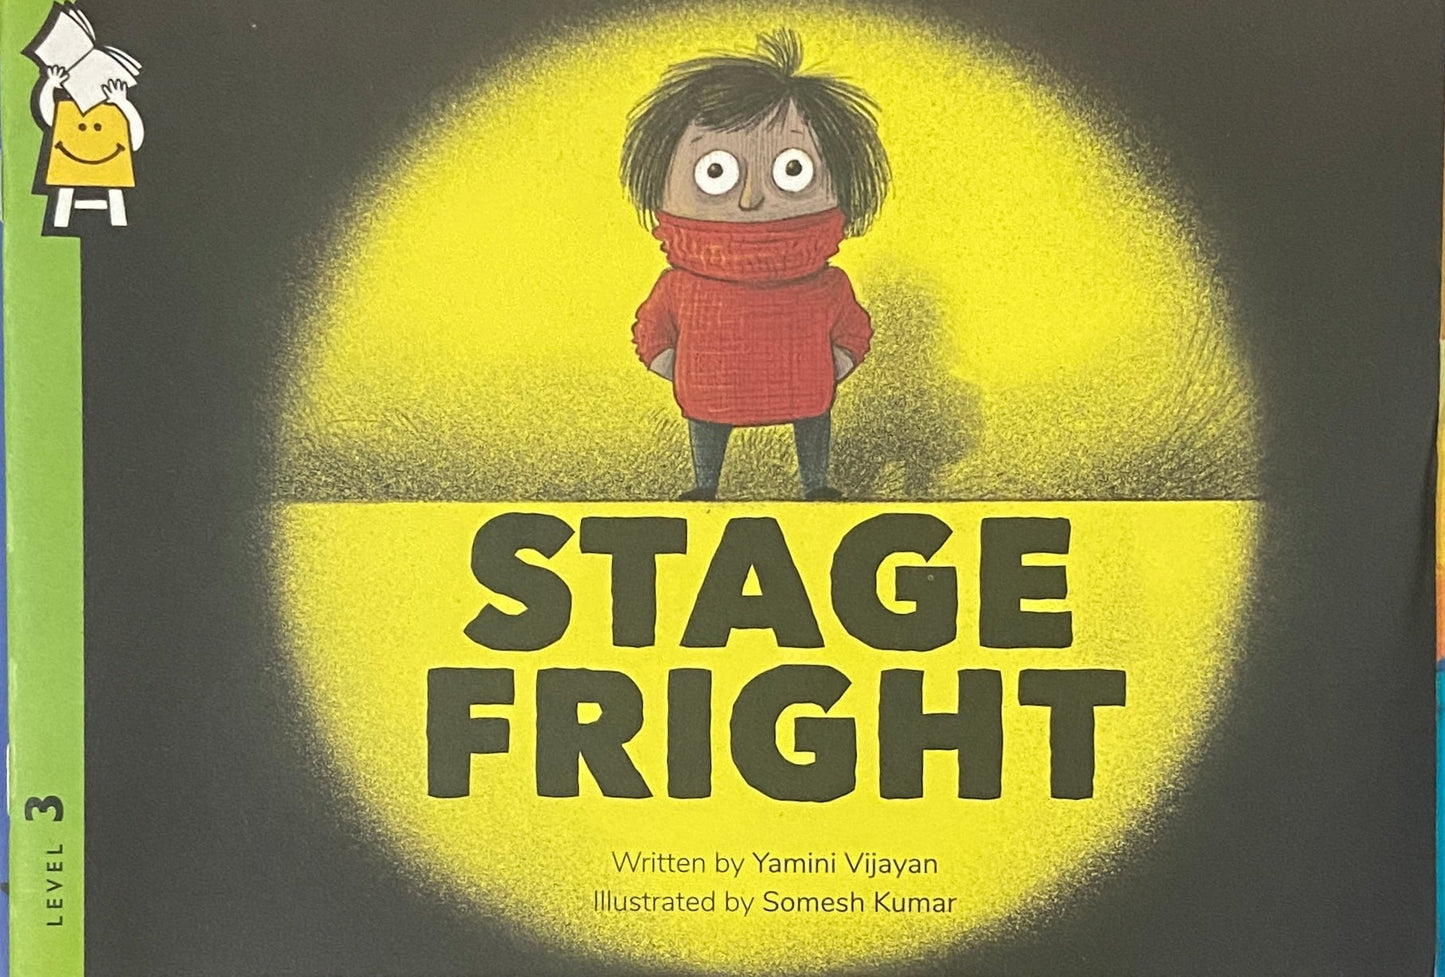 Stage Fright by Yamini Vijayan